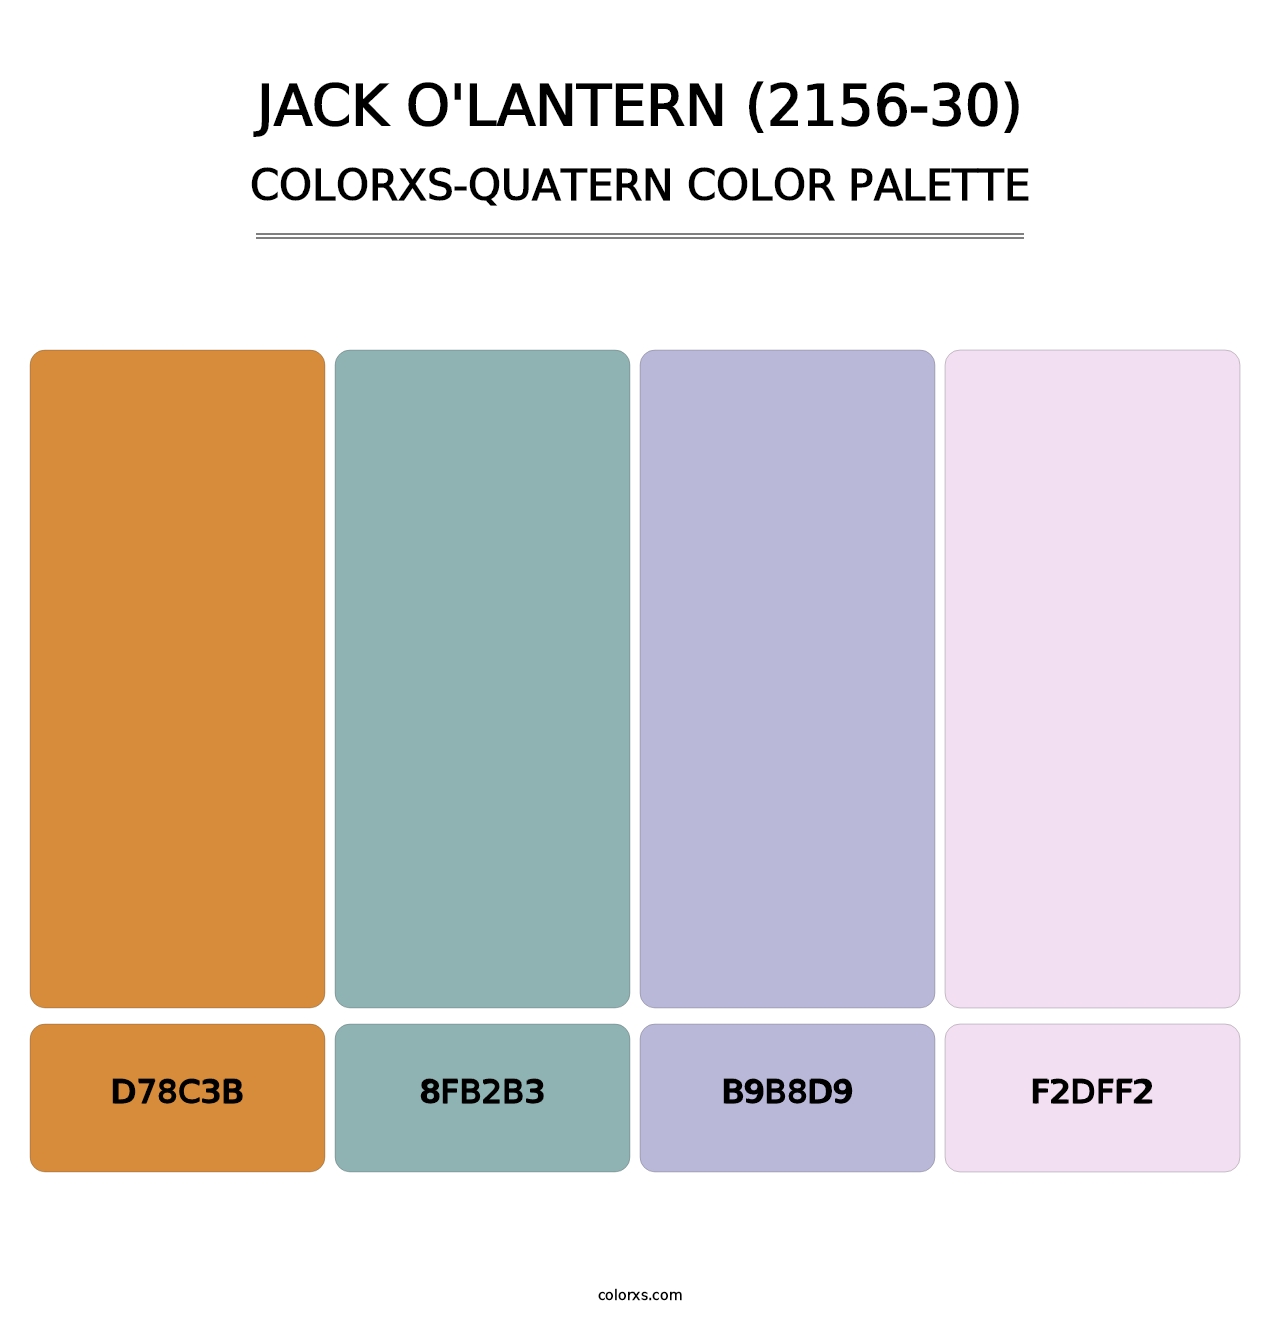 Jack O'Lantern (2156-30) - Colorxs Quatern Palette